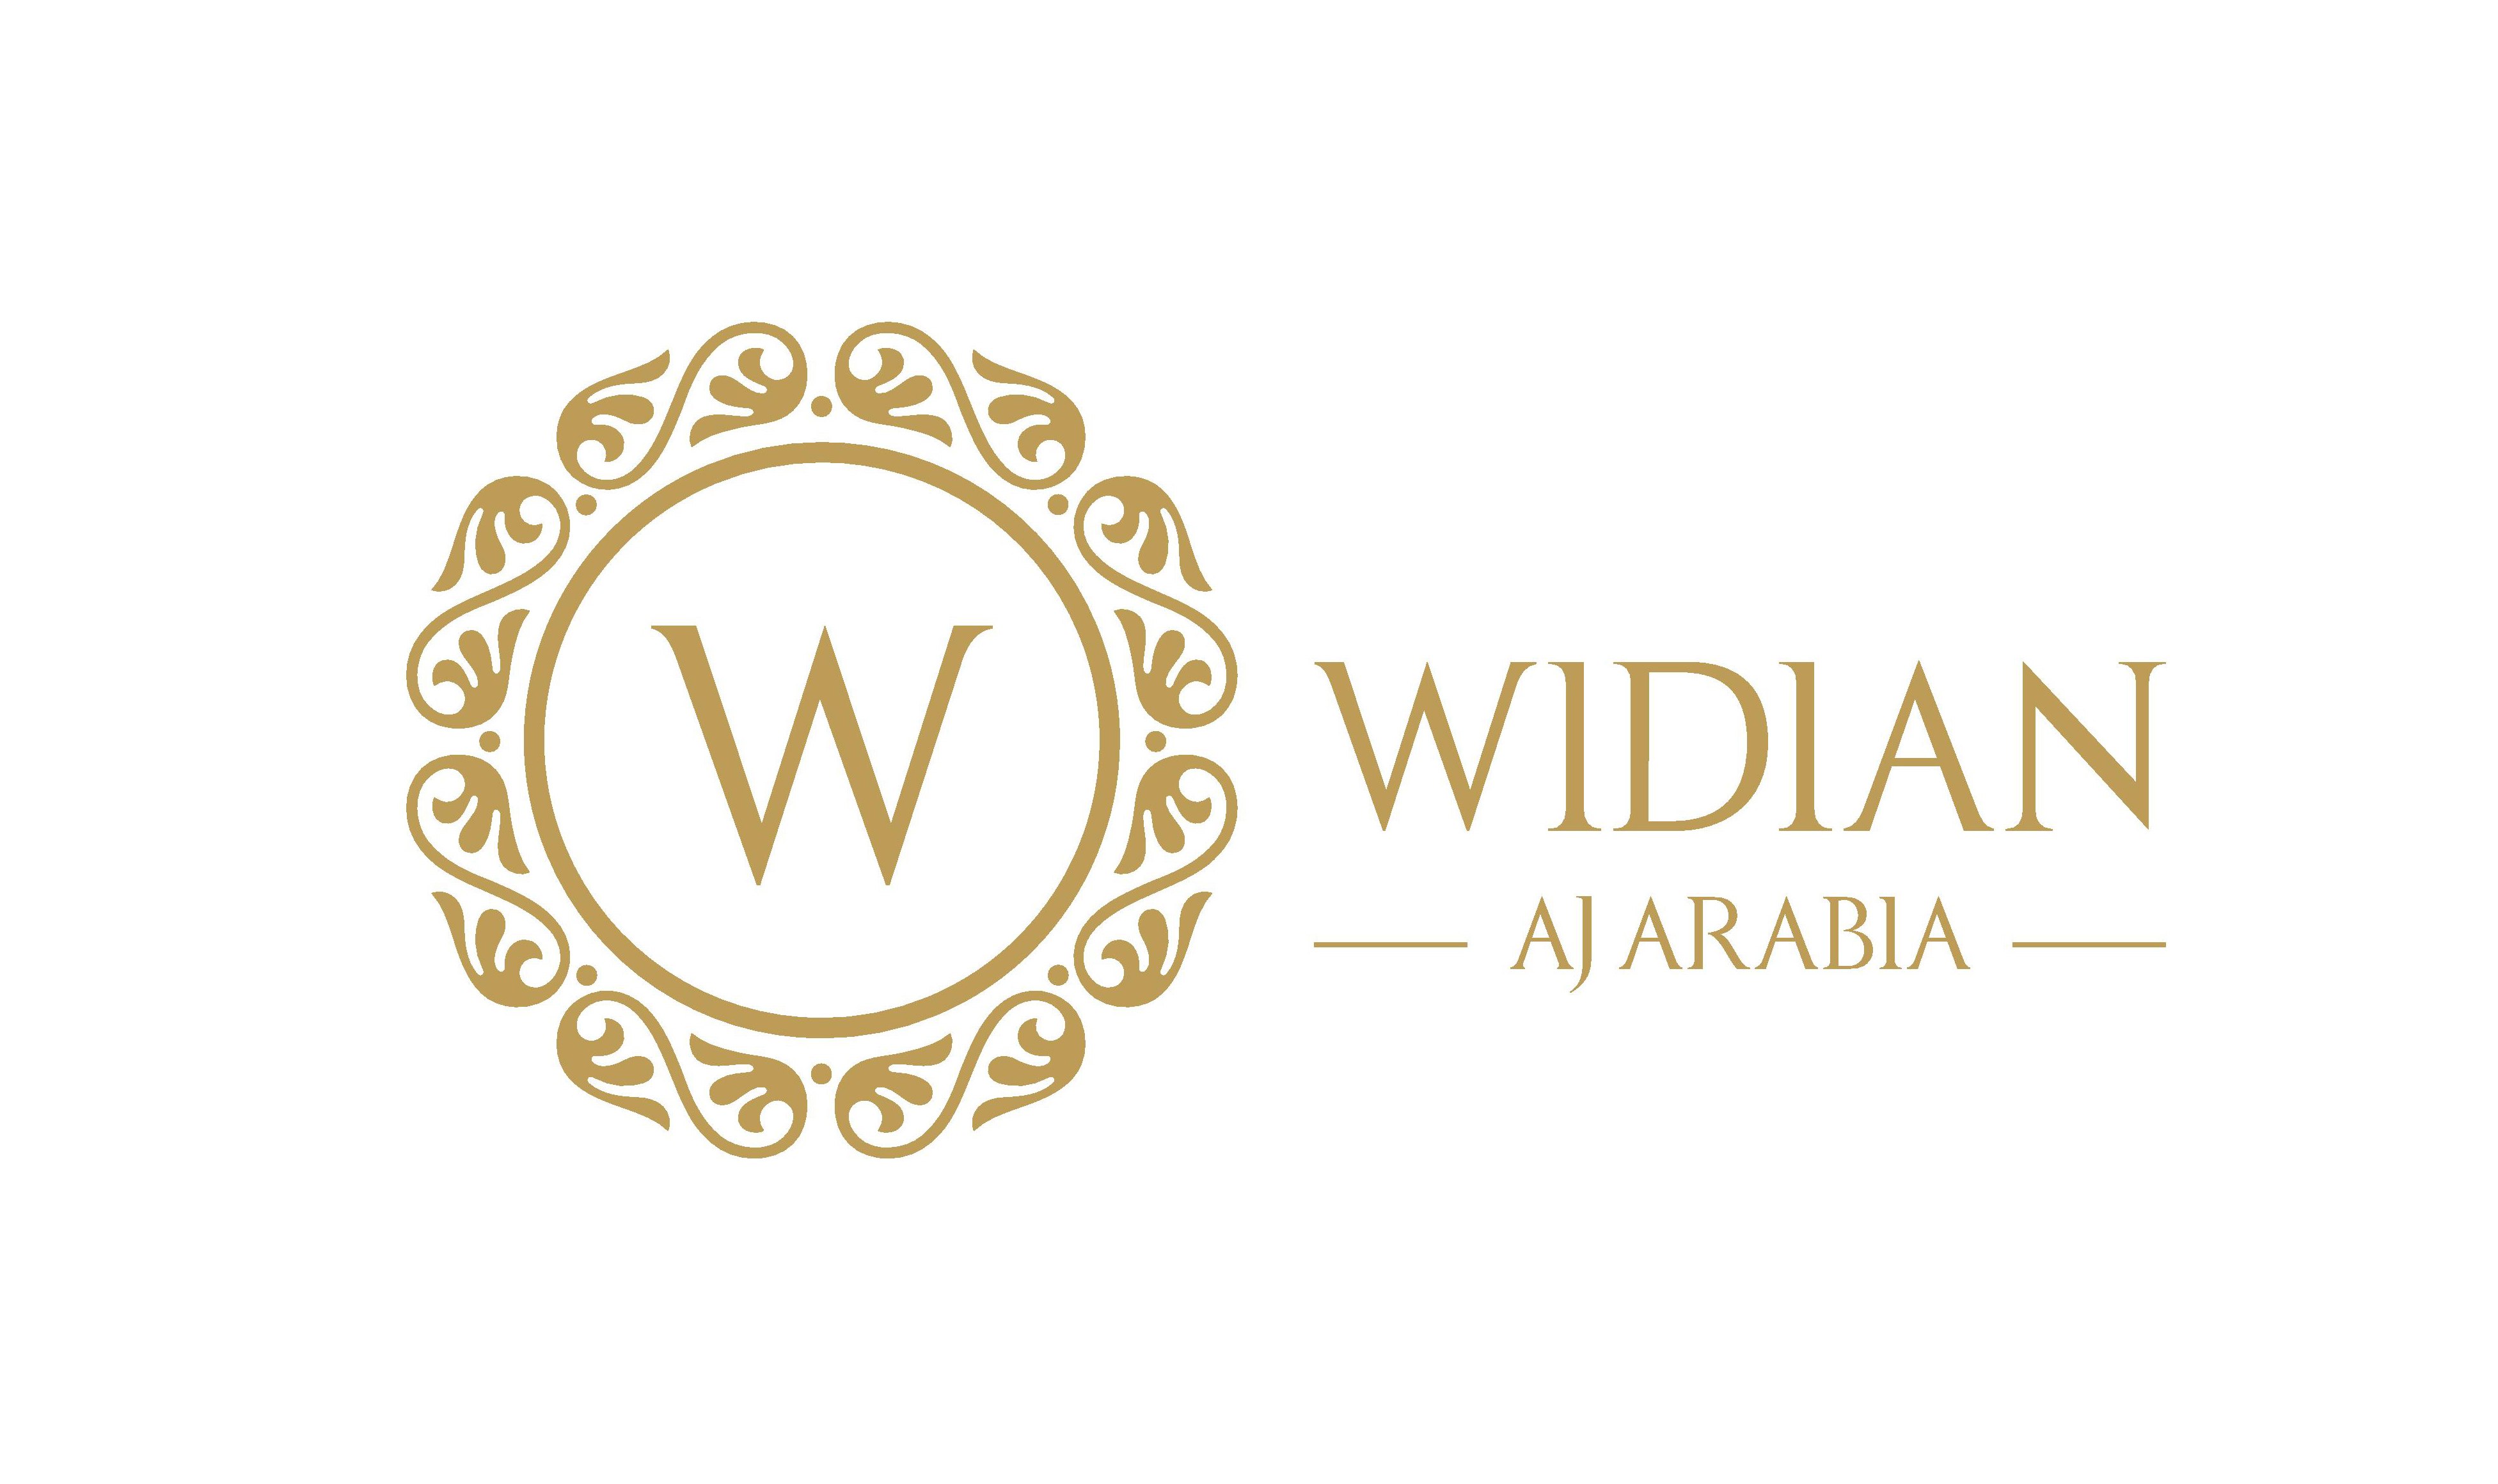 WIDIAN BY AJ ARABIA